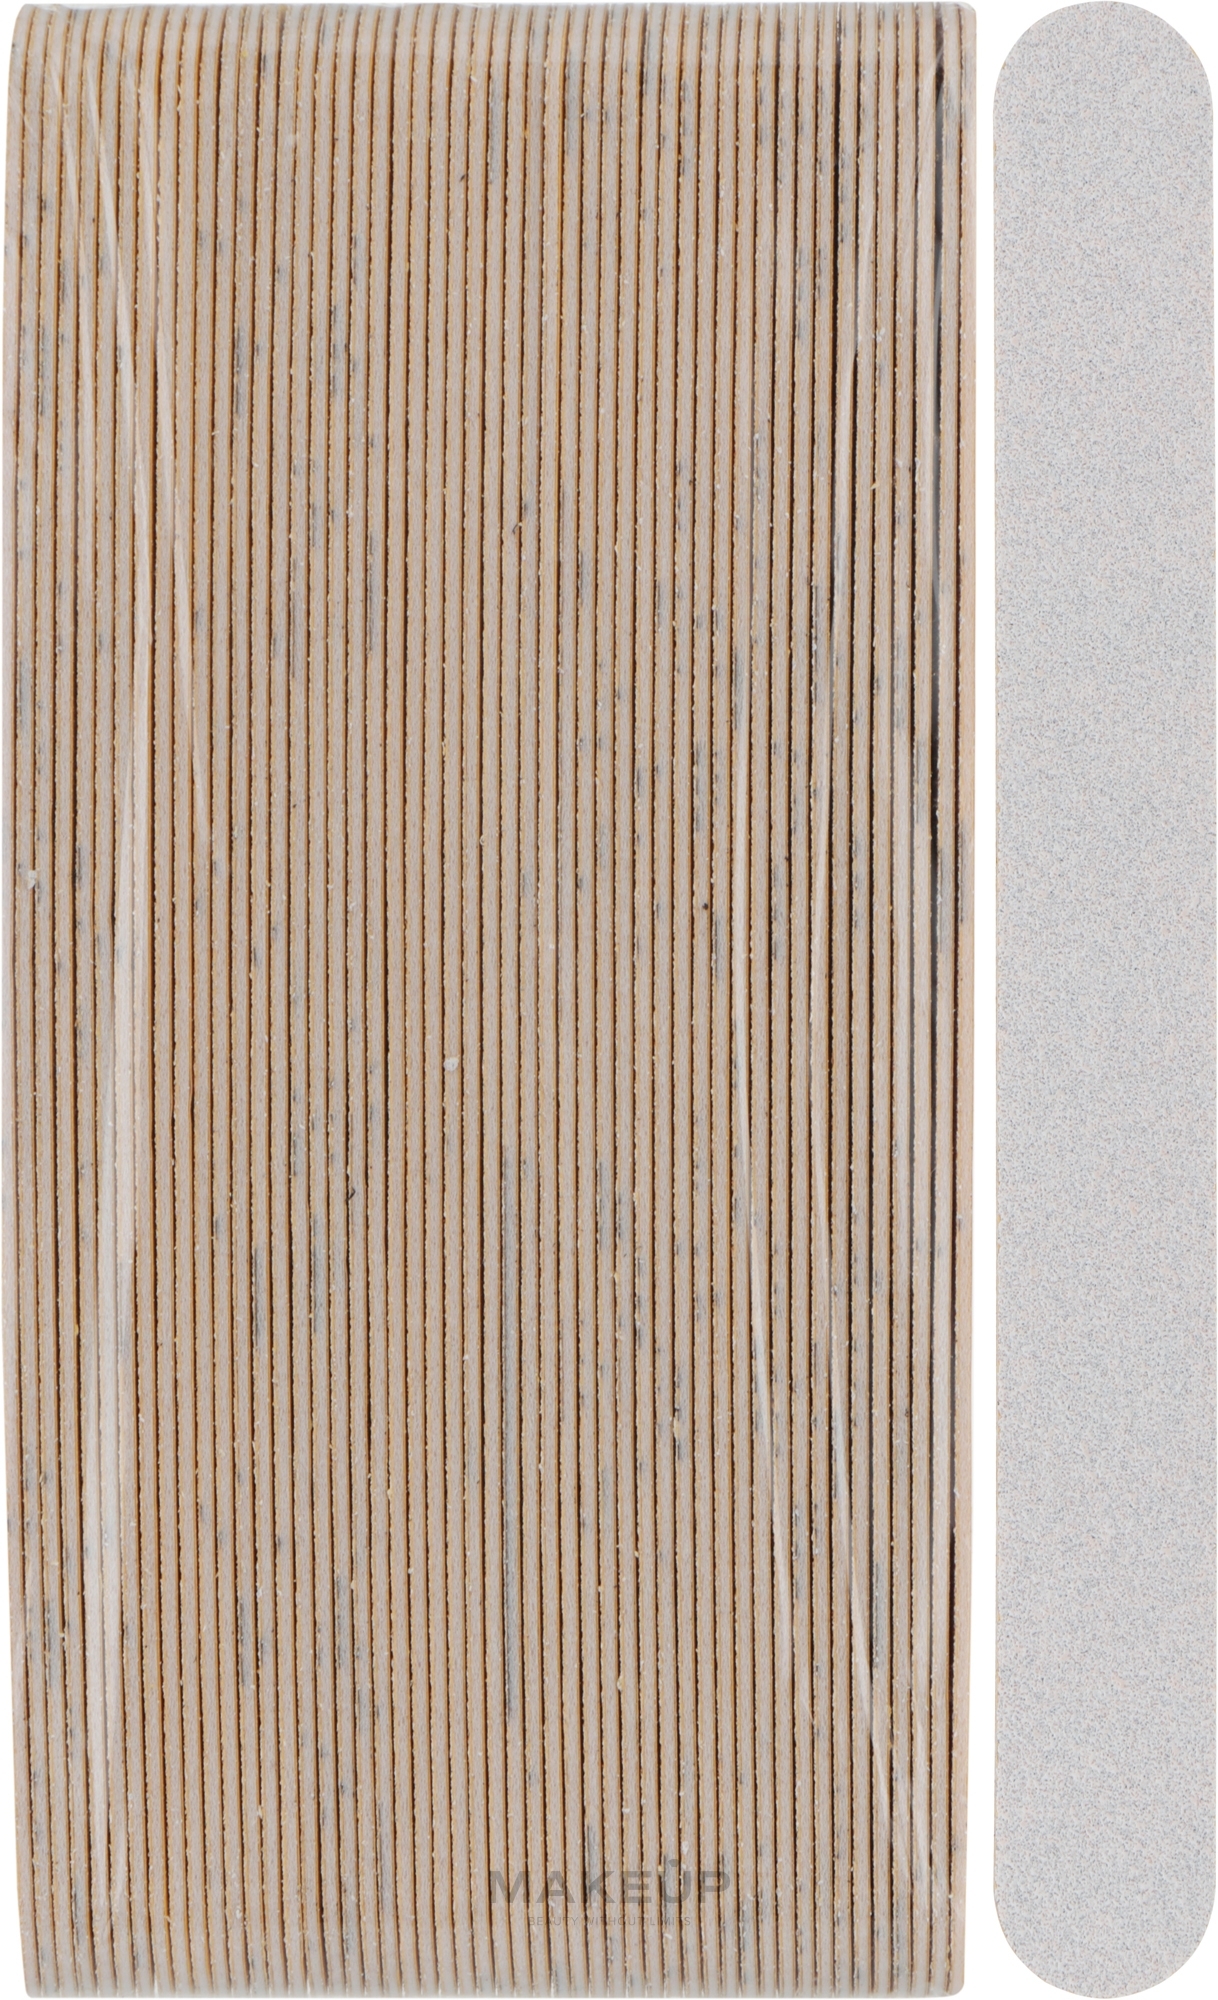 Змінні файли для пилки з м'яким шаром, рівні, 180 мм, 100 грит, білі - ThePilochki — фото 50шт